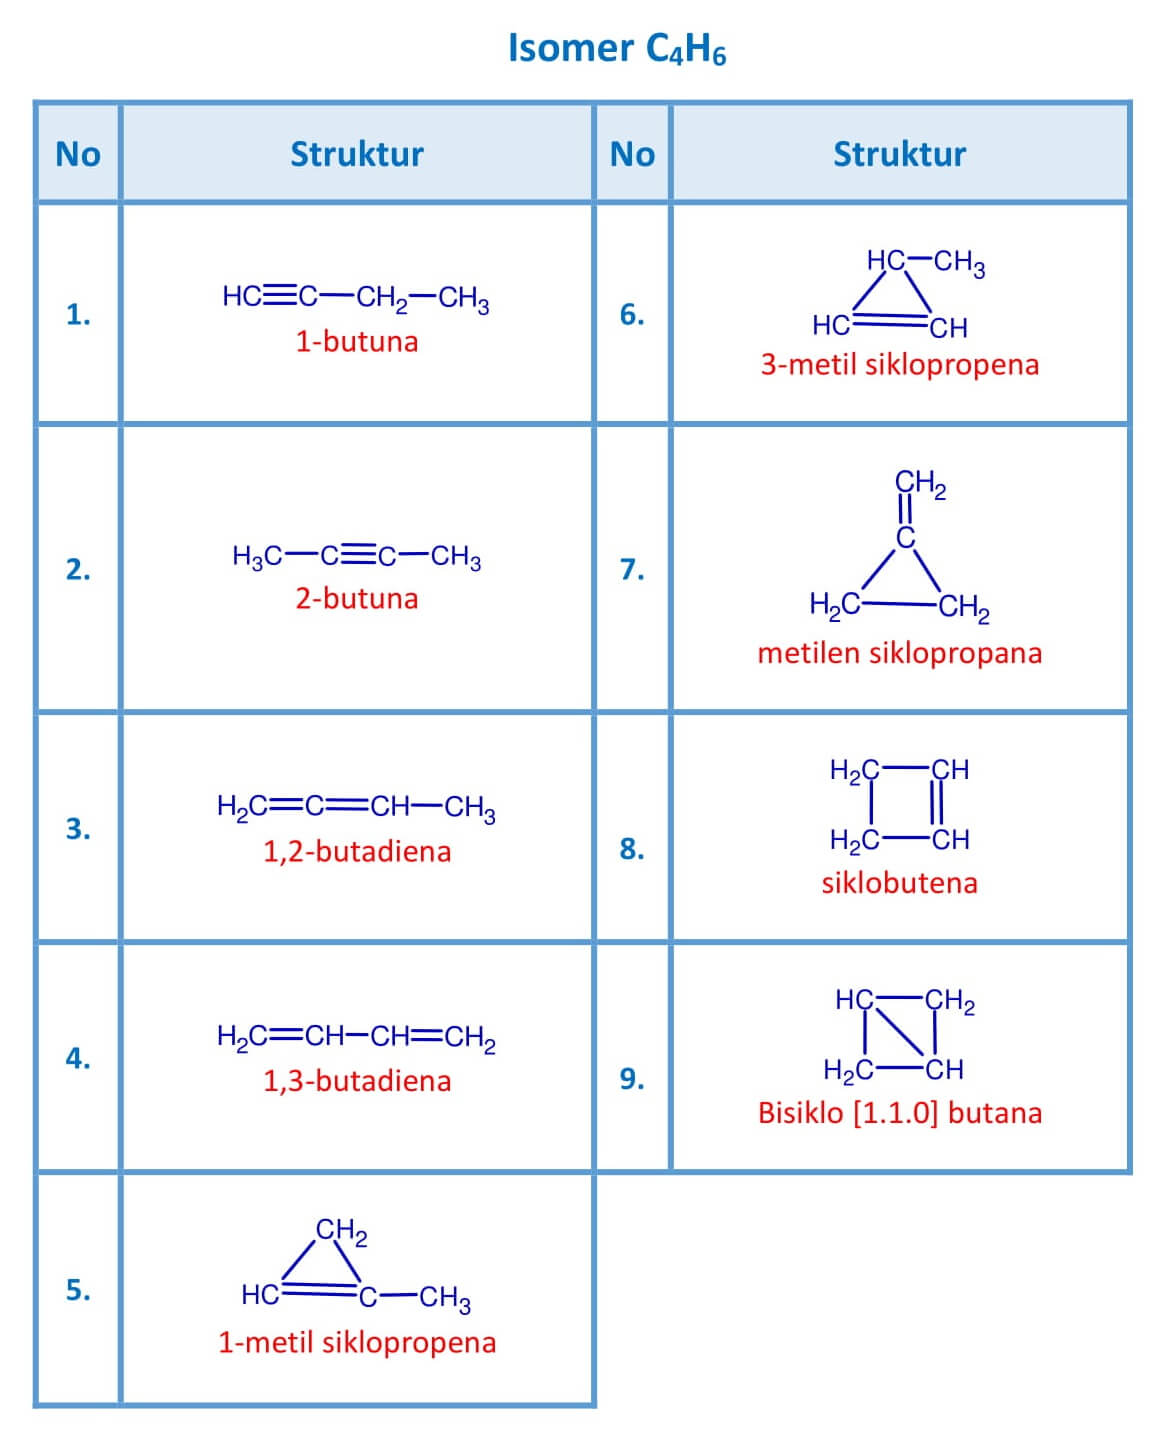 Tentukan isomer yang dimiliki senyawa dengan rumus umum c4h6